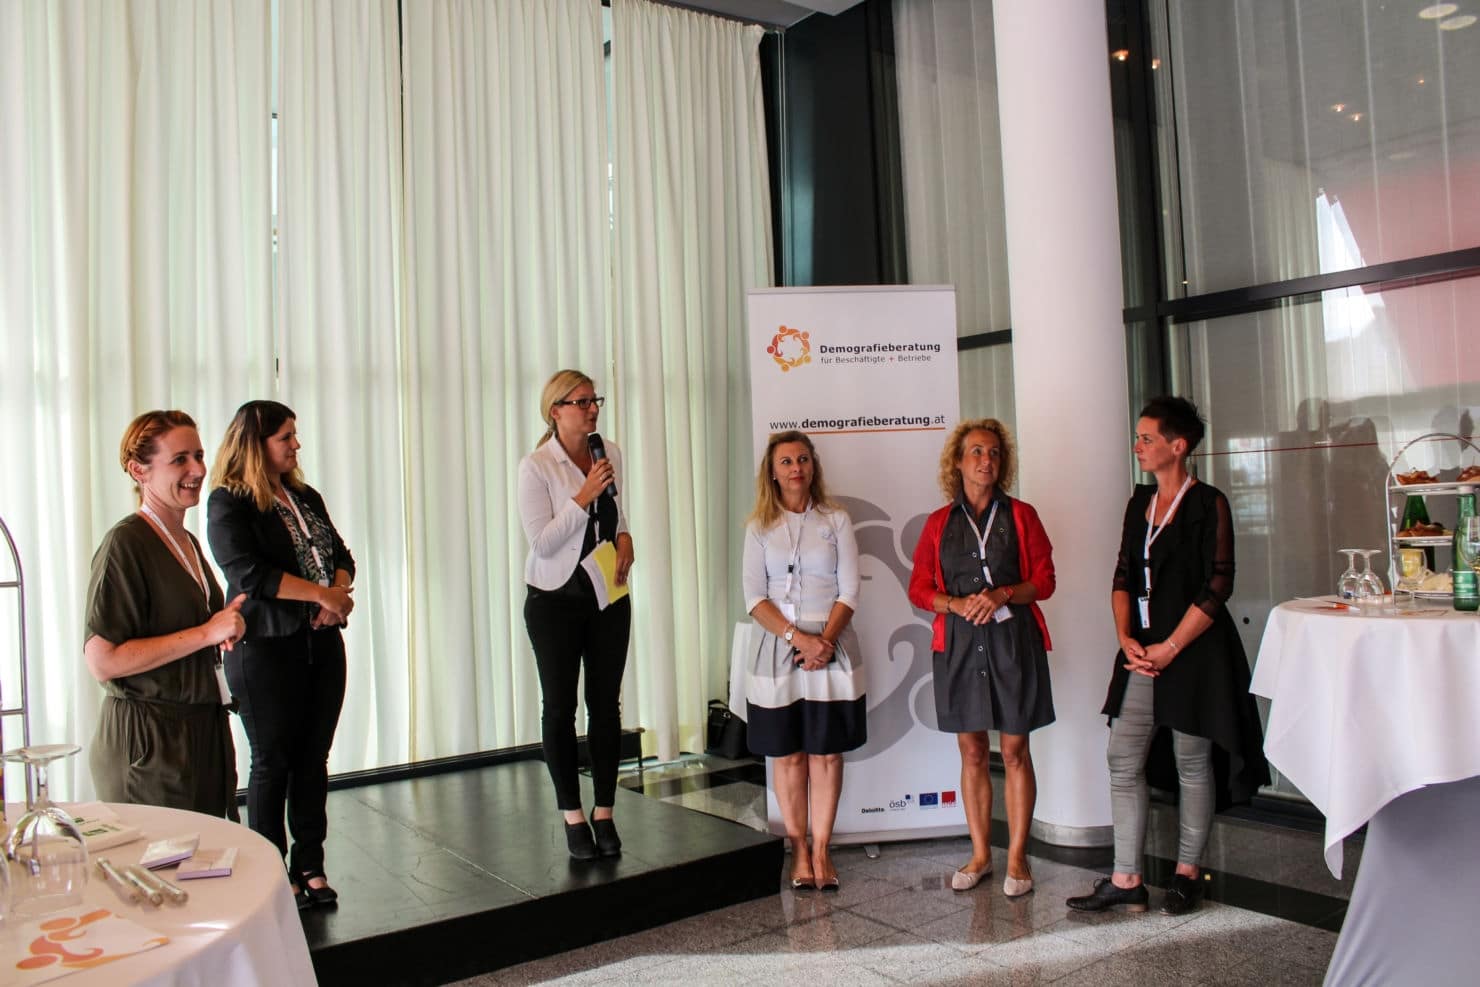 Simone Kosnik von der BAB Unternehmensberatung GmbH präsentierte die Demografieberatung beim Summer Meet & Greet im Congress Center Villach.